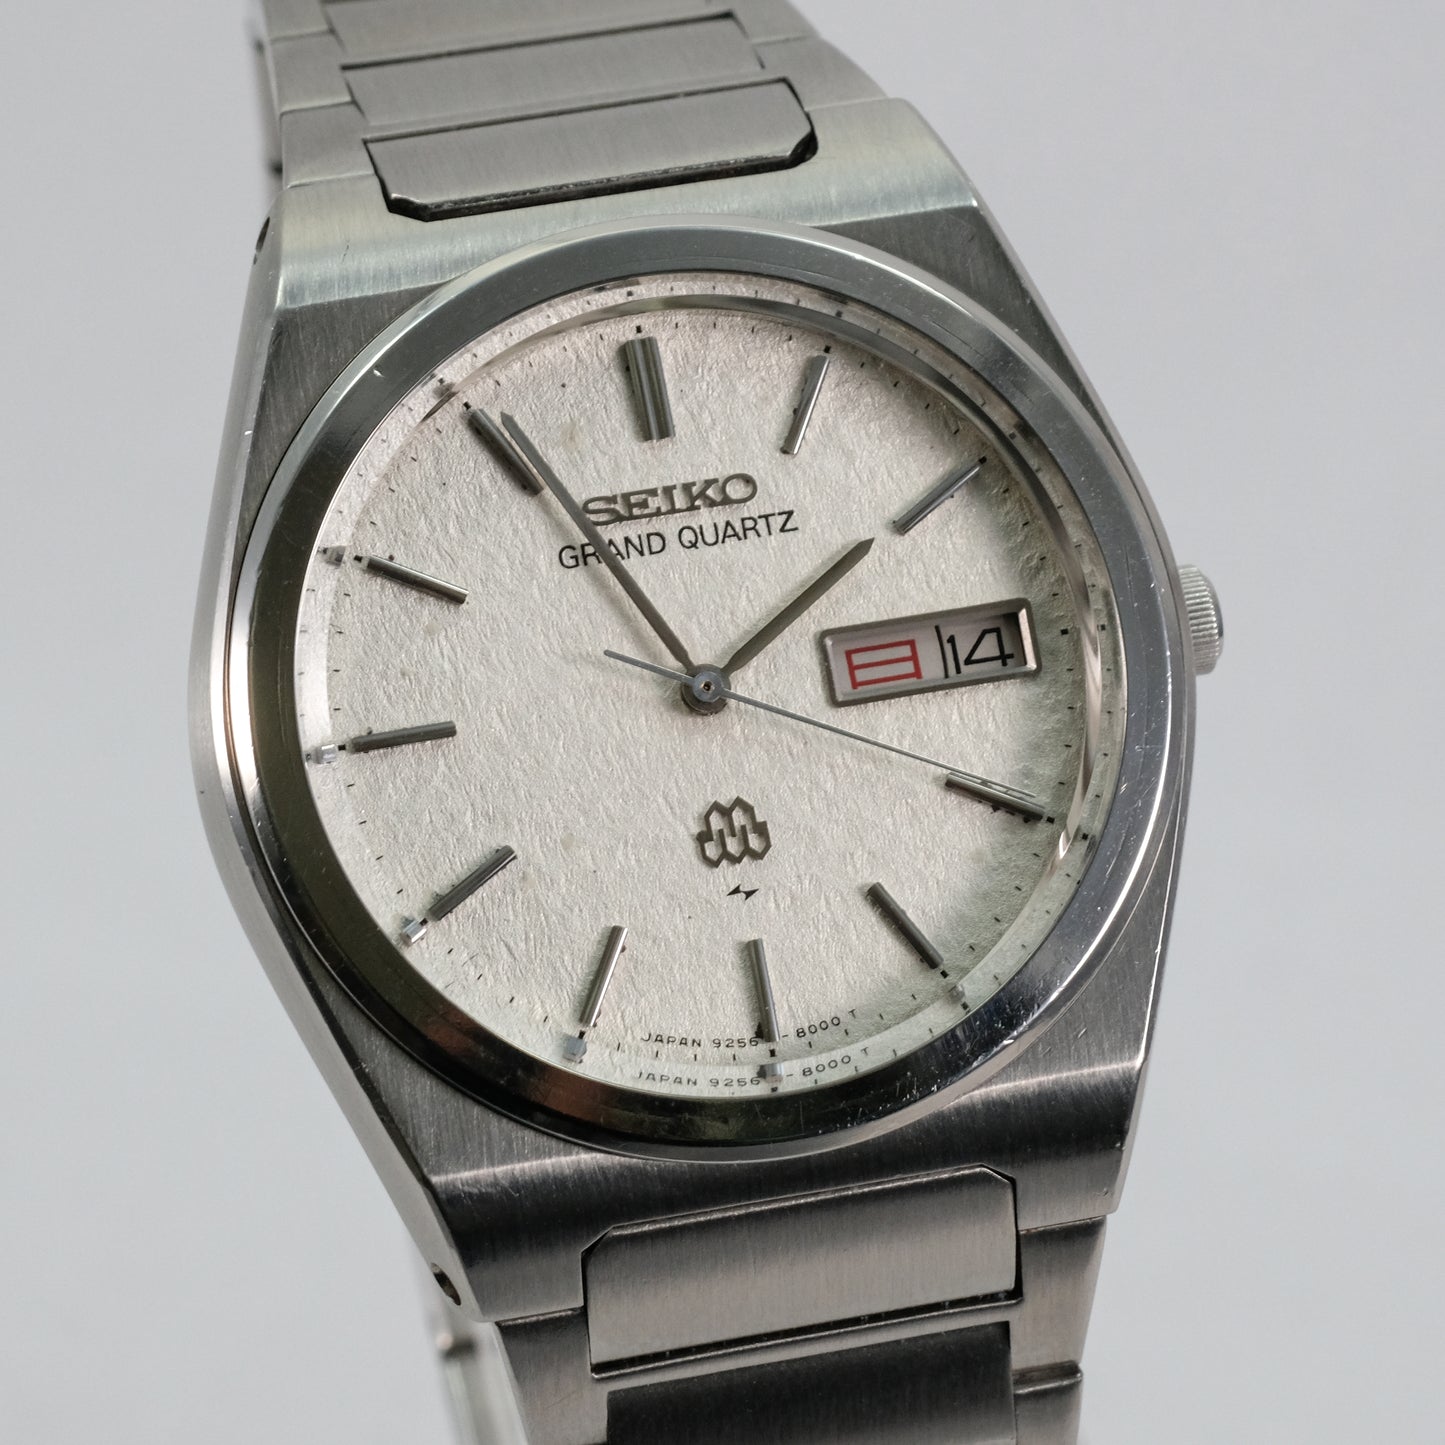 1978 Seiko Grand Quartz 9256-8000